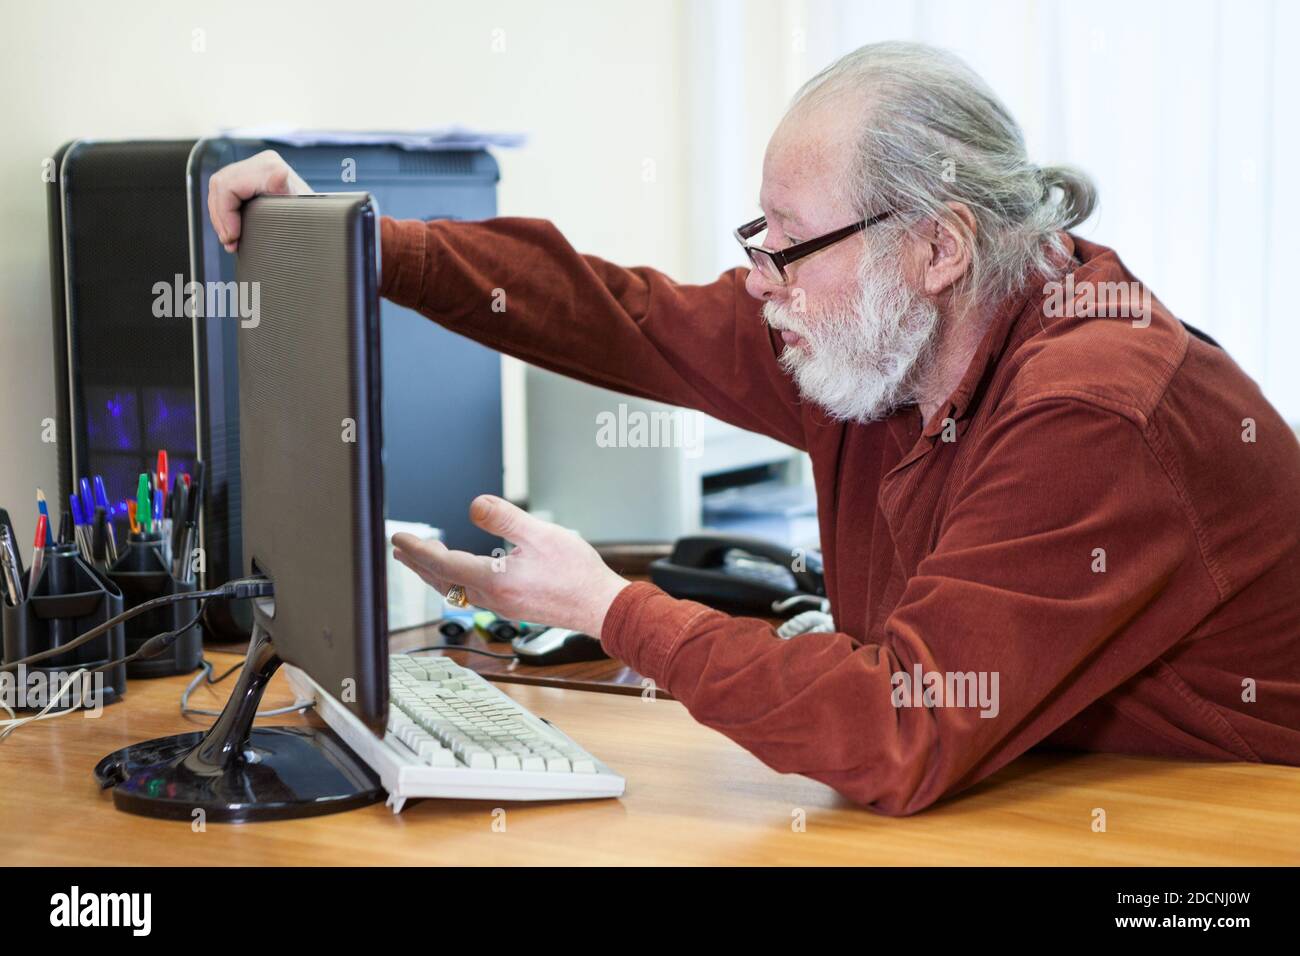 Serious Senior Mann versucht, Computer zu verwenden, hält Monitor mit Verständnis. Ältere Menschen mit neuer Technologie Stockfoto